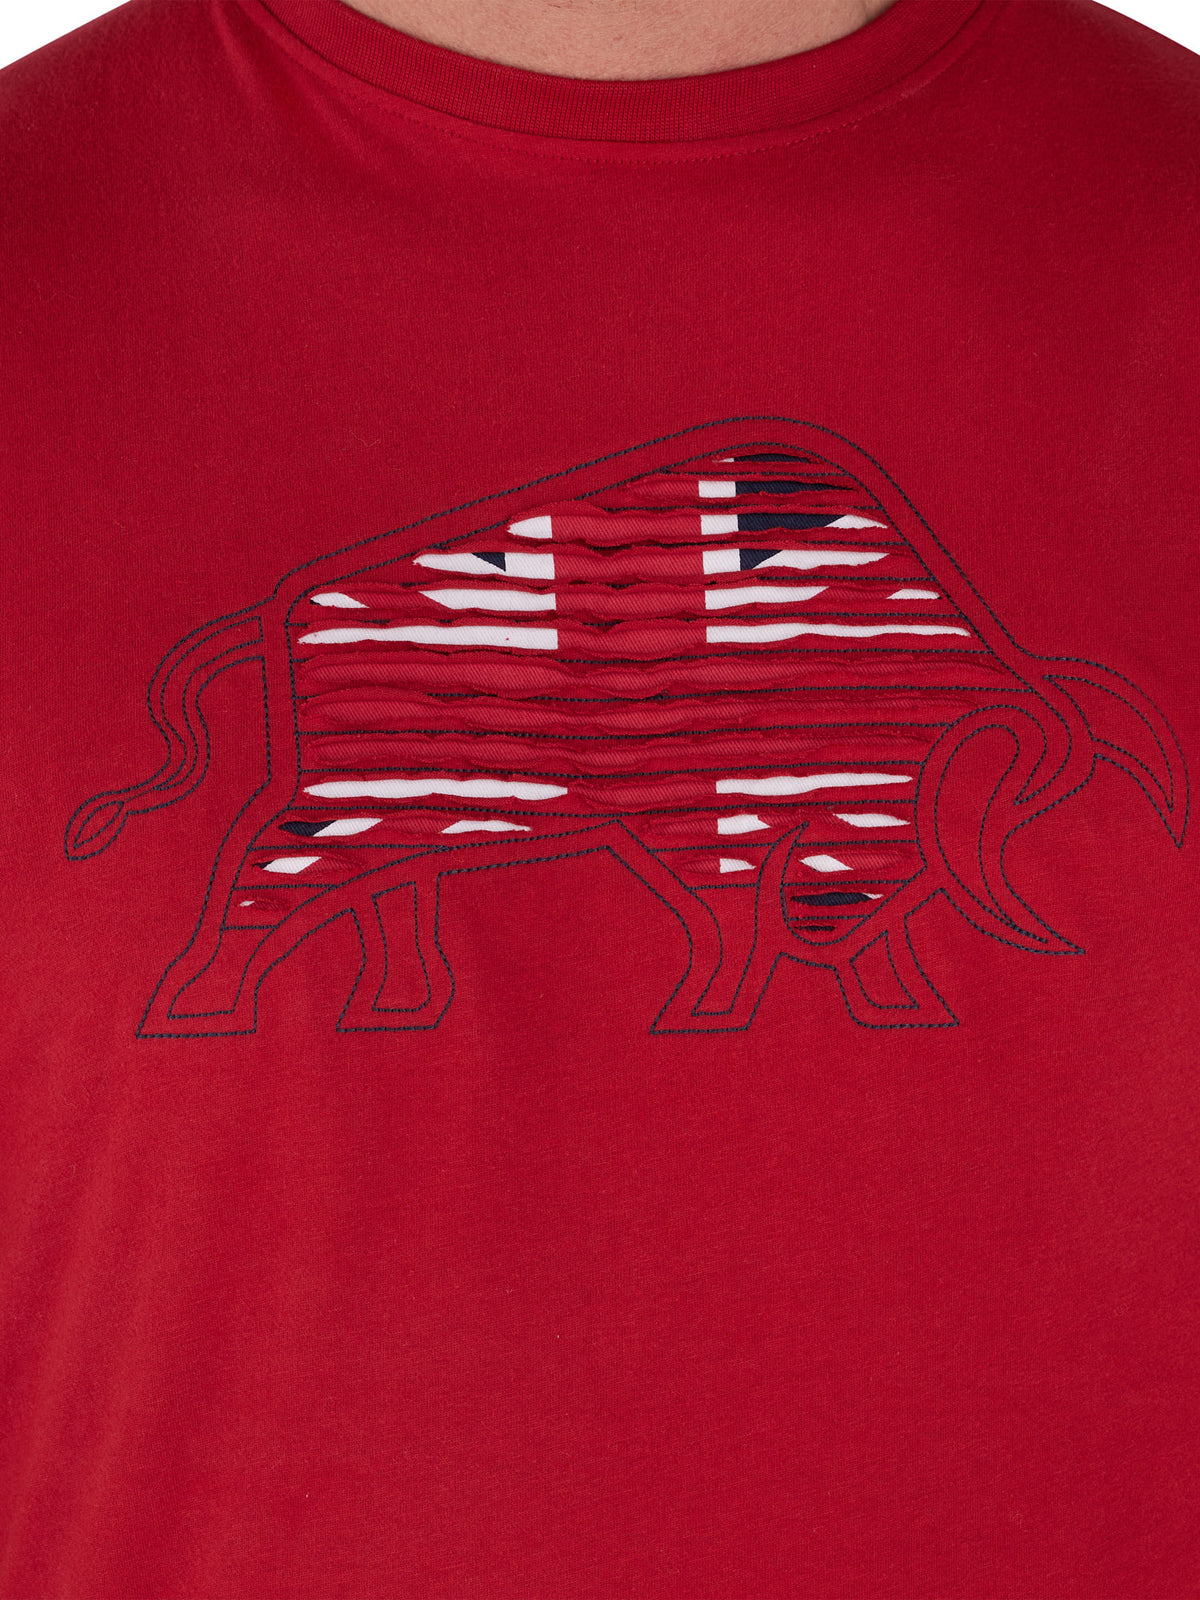 Slash Bull T-Shirt - Red